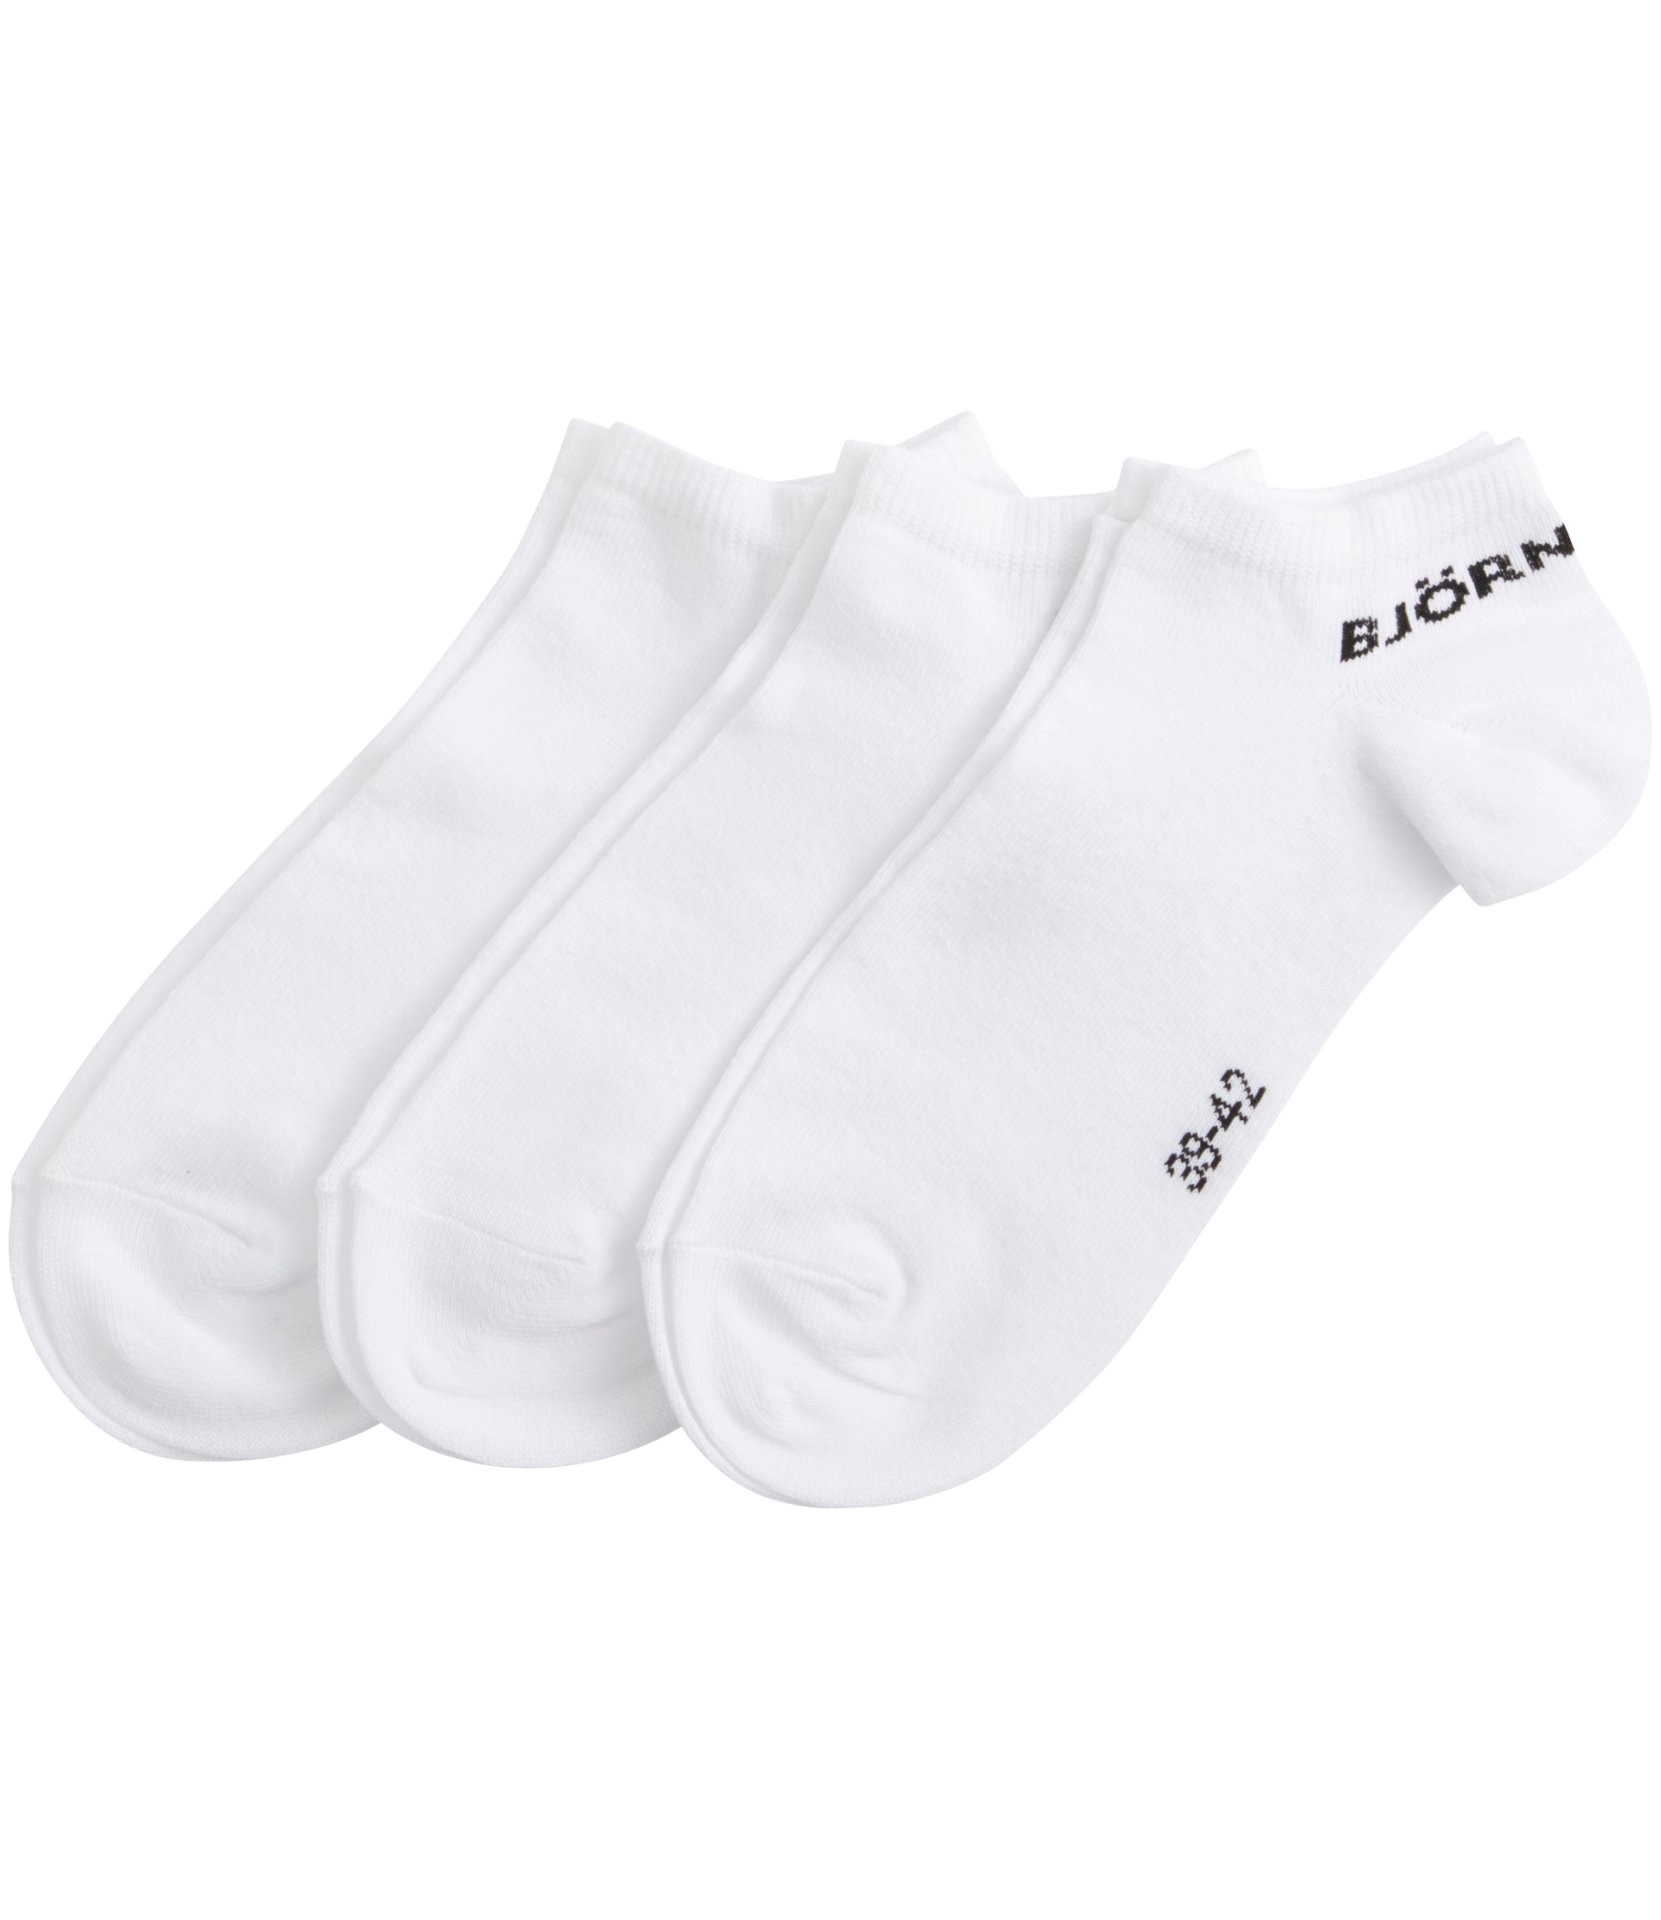 Ανδρικά/Αξεσουάρ/Κάλτσες BJORN BORG - Ανδρικές κάλτσες σετ των 3 BJORN BORG λευκές